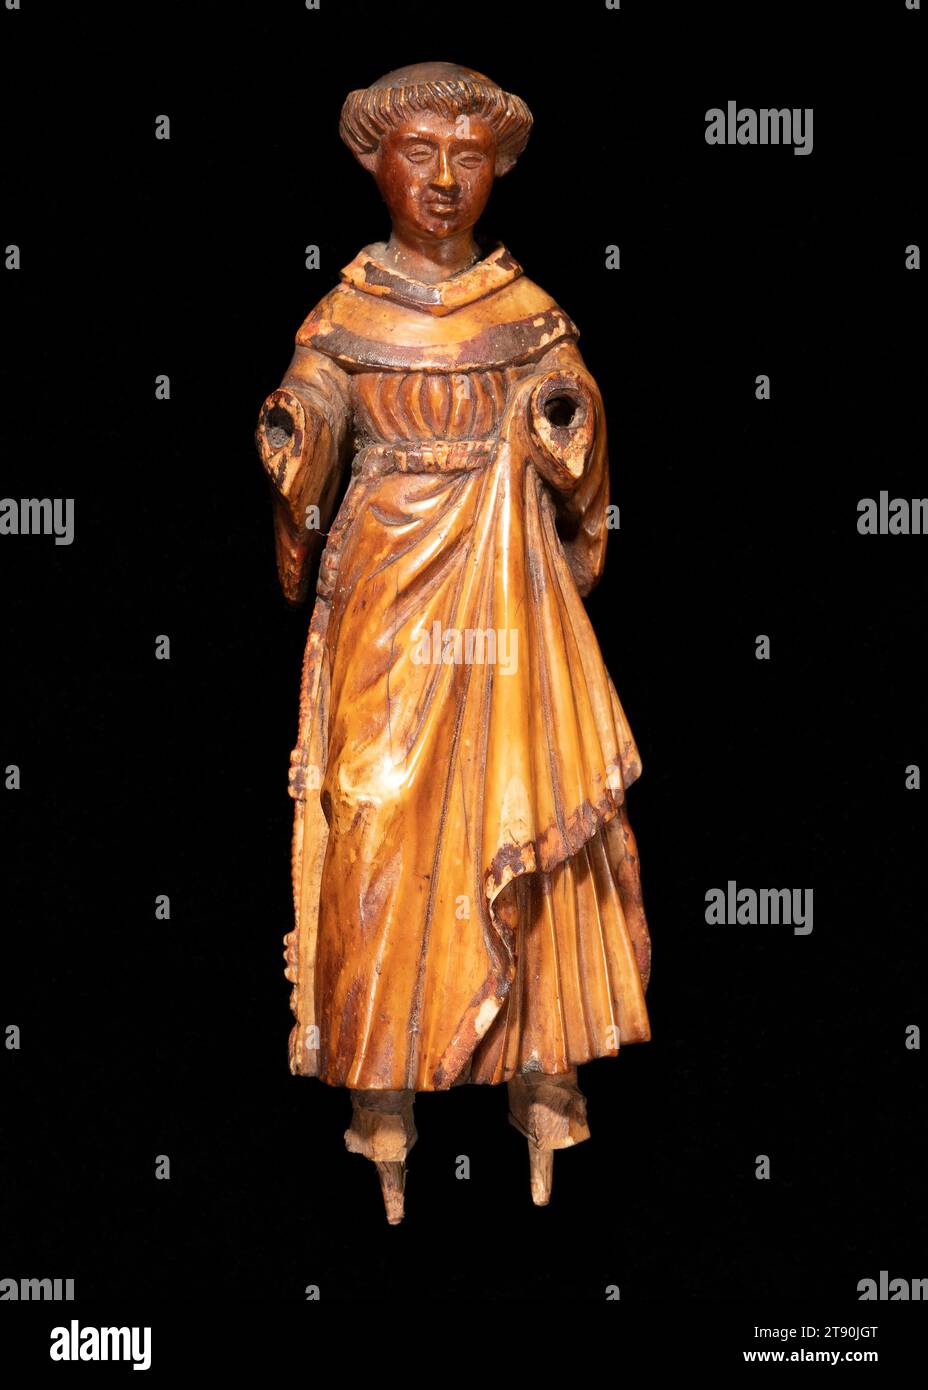 St. Franz von Assisi, 17.-18. Jahrhundert, 3/16 x 5/8 cm (15,72 x 5,08 x 4,13 cm), Elfenbein, 17. Bis 18. Jahrhundert, die Provinz Goa in Westindien stand von 1512 bis 1961 unter portugiesischer Kontrolle und bildete einen Nexus in Handelsrouten, die die Erde umrundeten. Goan Handwerker waren bekannt für ihre geschmeidige Modellierung von Elfenbein (wahrscheinlich aus Mosambik exportiert) in christliche Ikonen, die den Appetit auf Luxusprodukte in Europa nähren, sowie für evangelikale Missionen in Asien und Amerika. Stockfoto